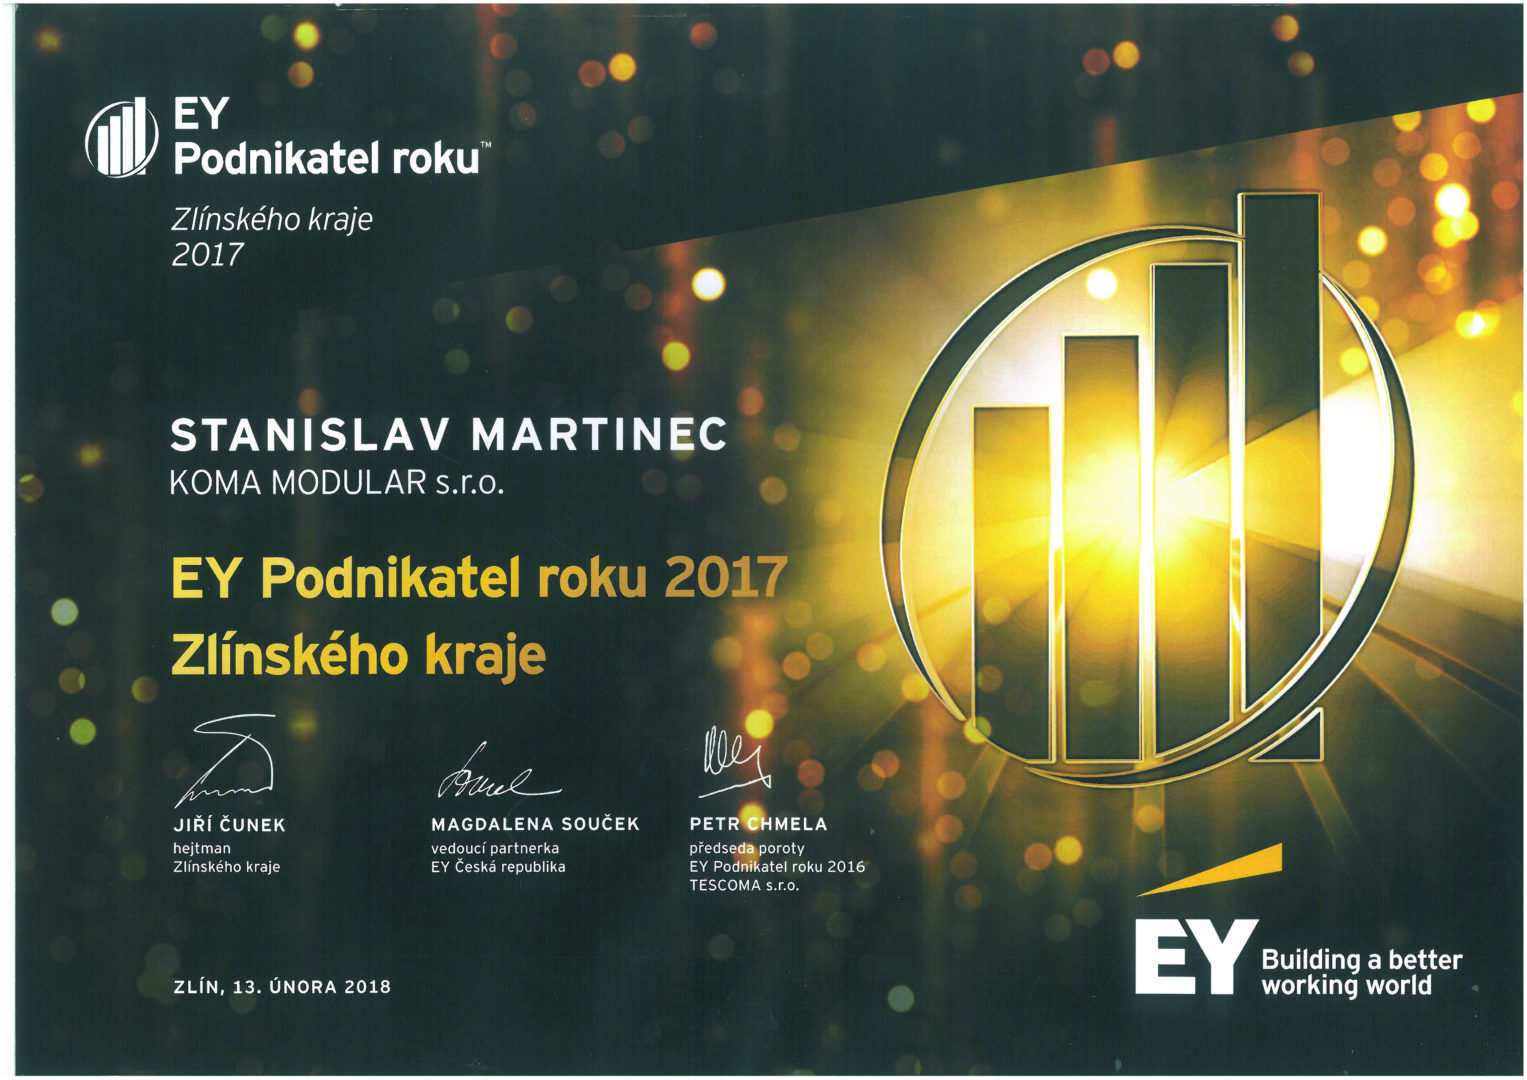 EY Podnikatel roku 2017 Zlínského kraje